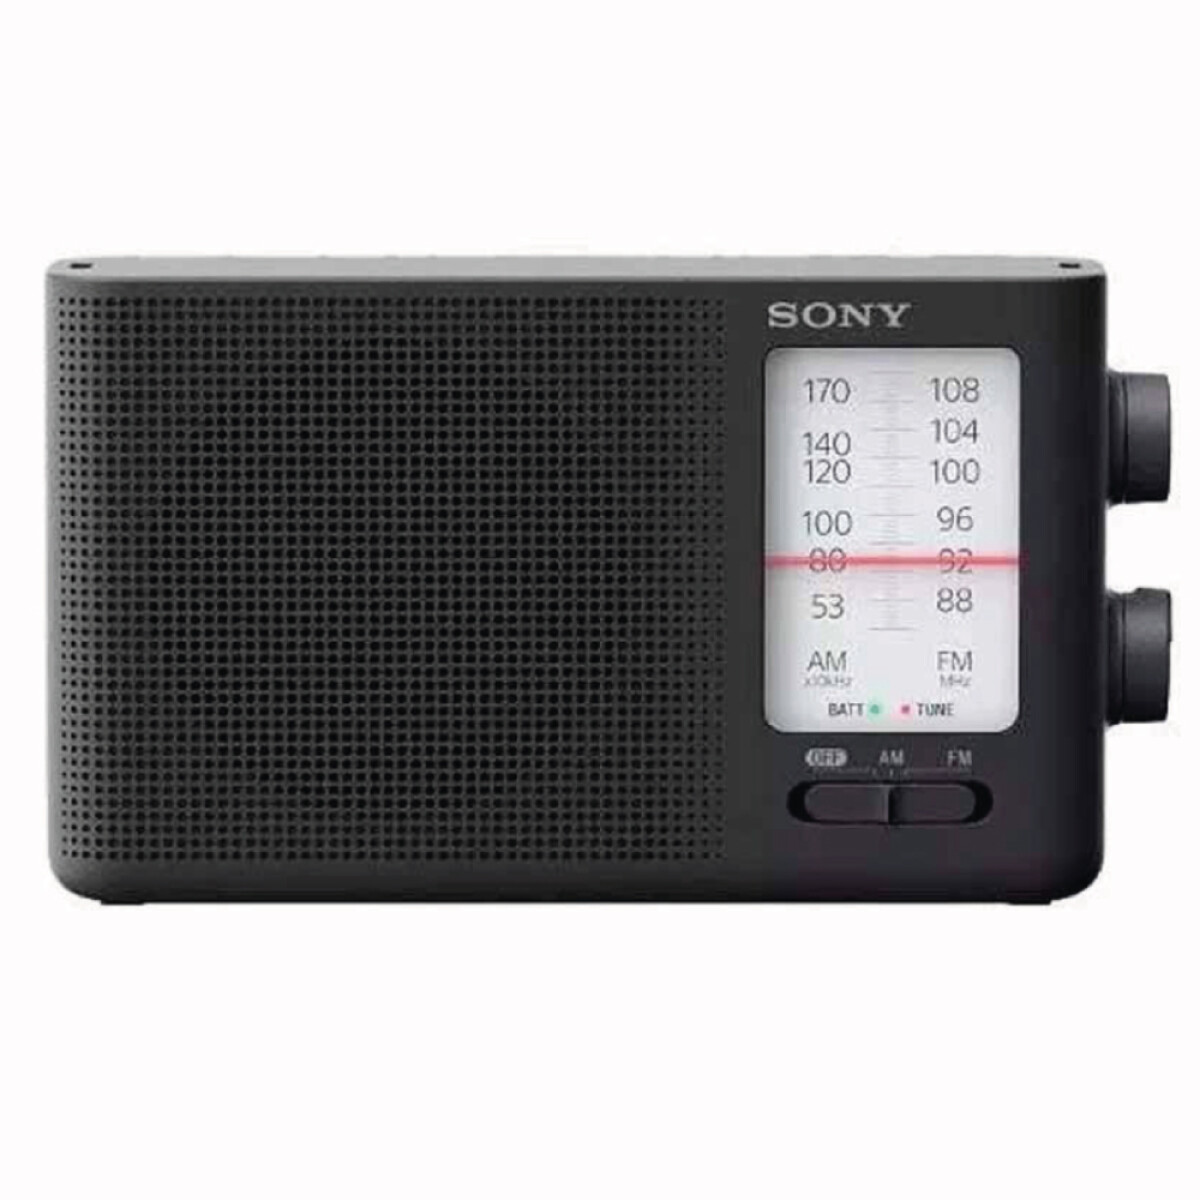 Radio SONY de bolsillo FM/AM de sintonización analógica ICF-19 